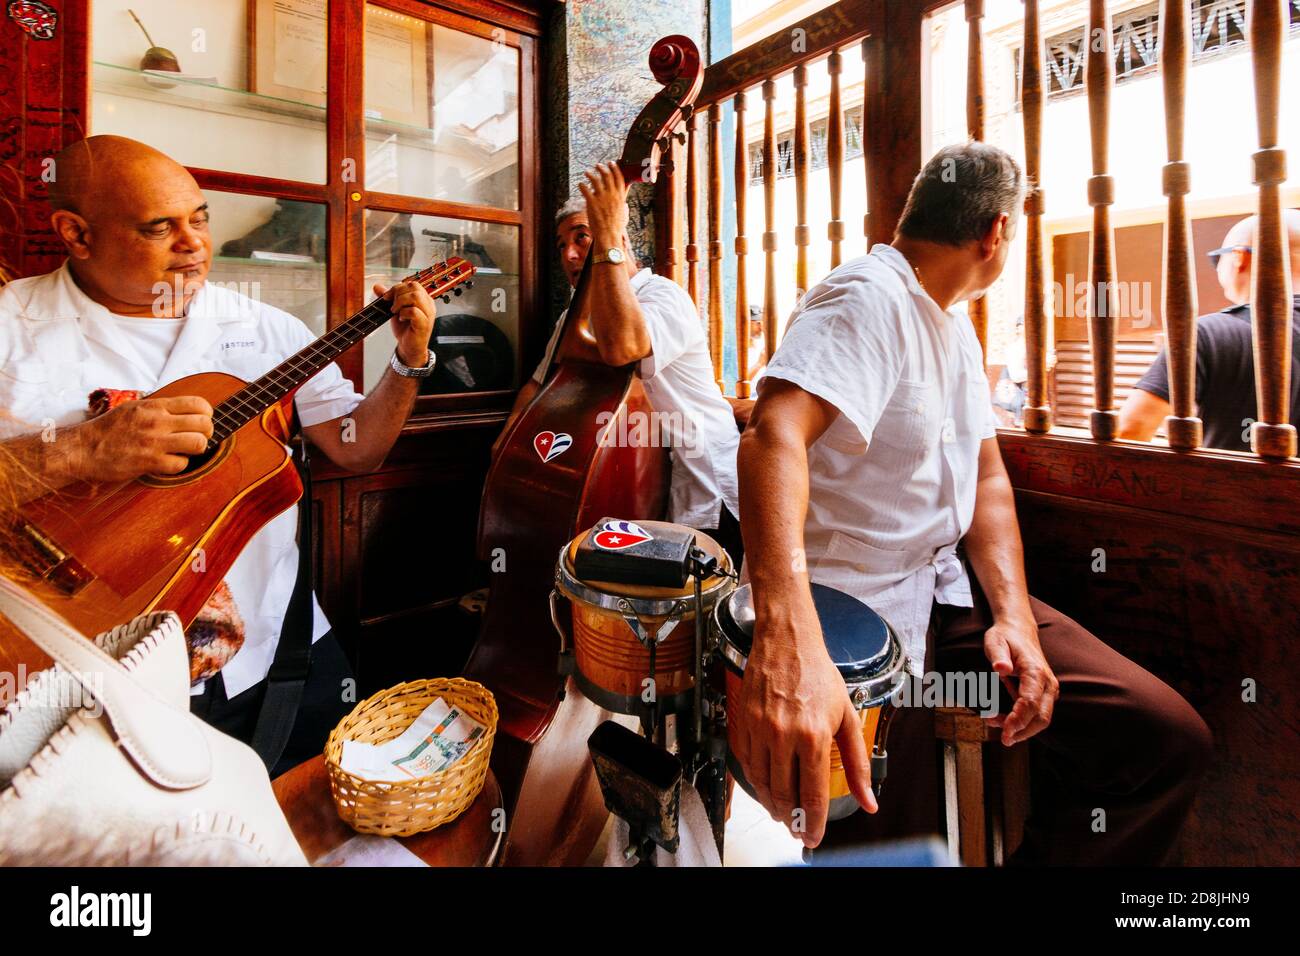 Eine Band spielt Musik in La Bodeguita del Medio. La Bodeguita del Medio ist ein typisches Havanna-Restaurant in Kuba, und einer der großen touristischen Orte in Th Stockfoto